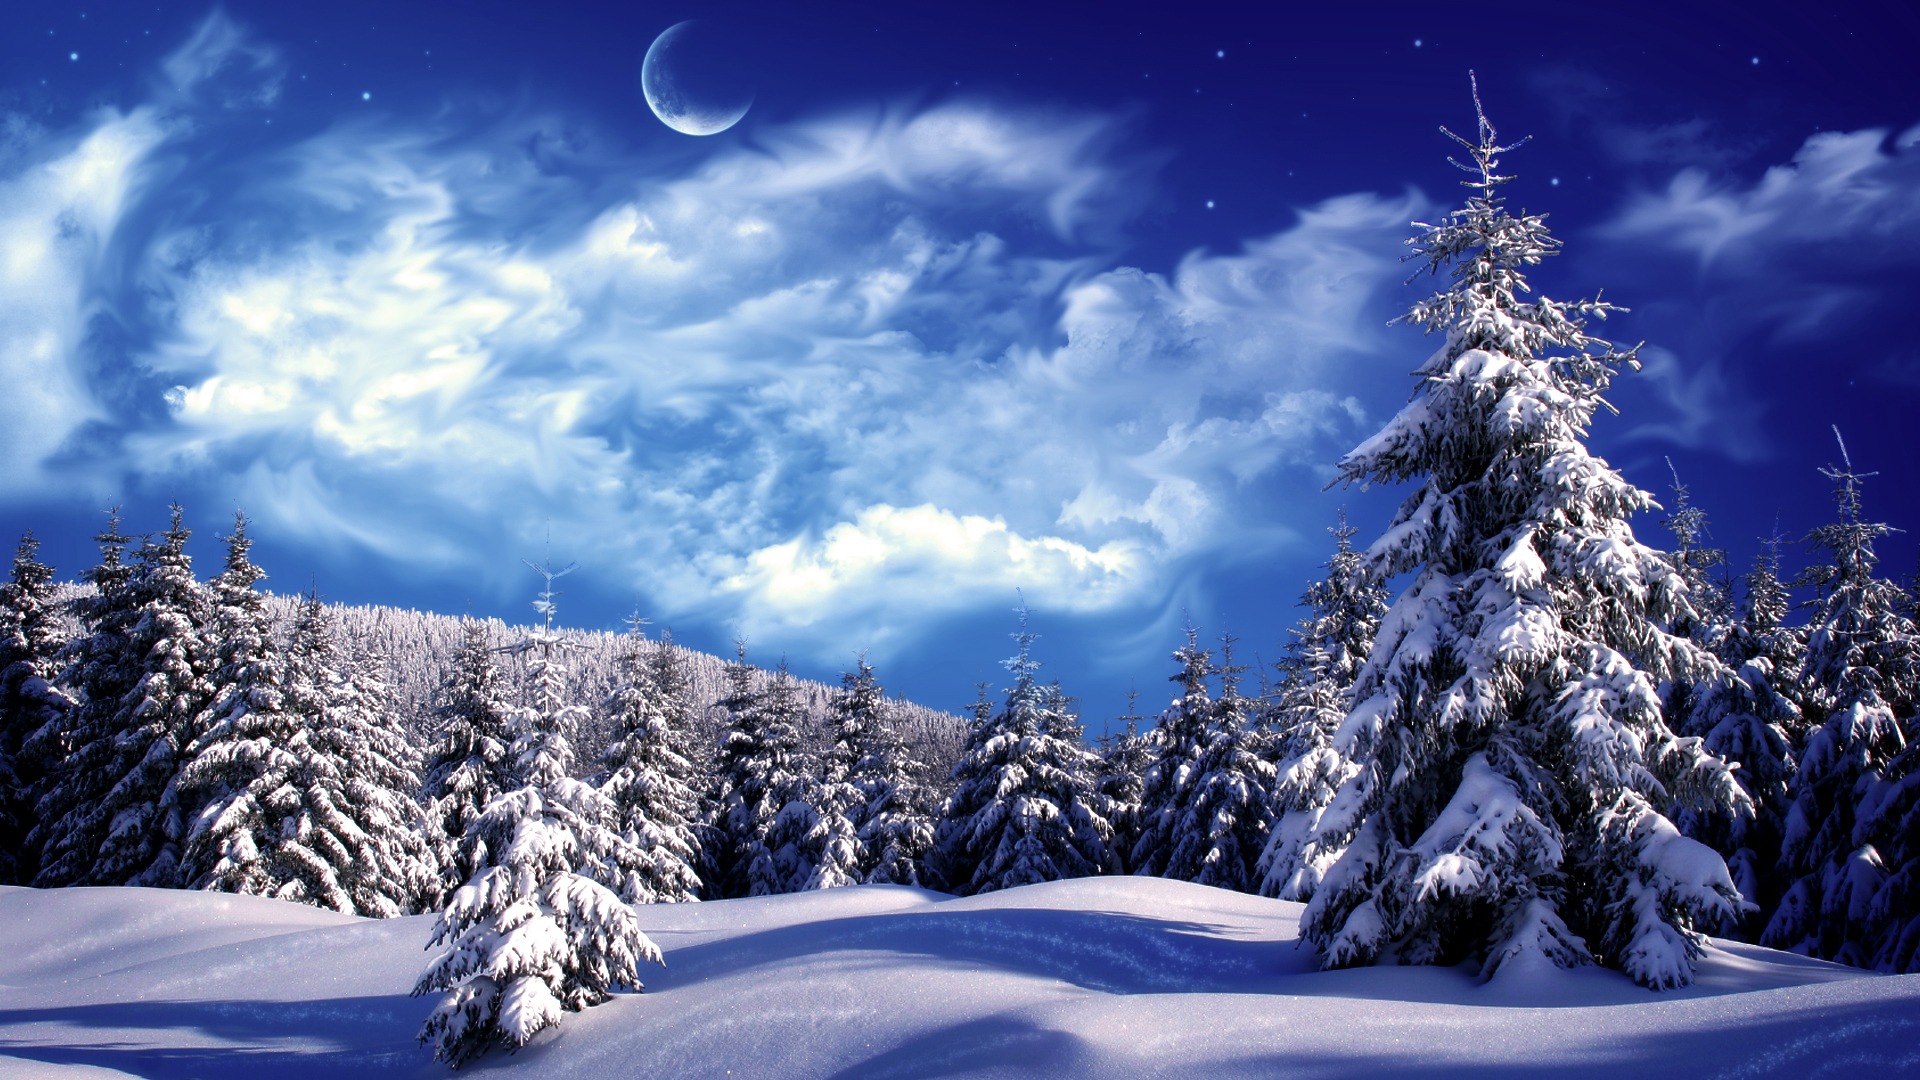 Blue Mountains Winter Wonderland Wallpaper HD